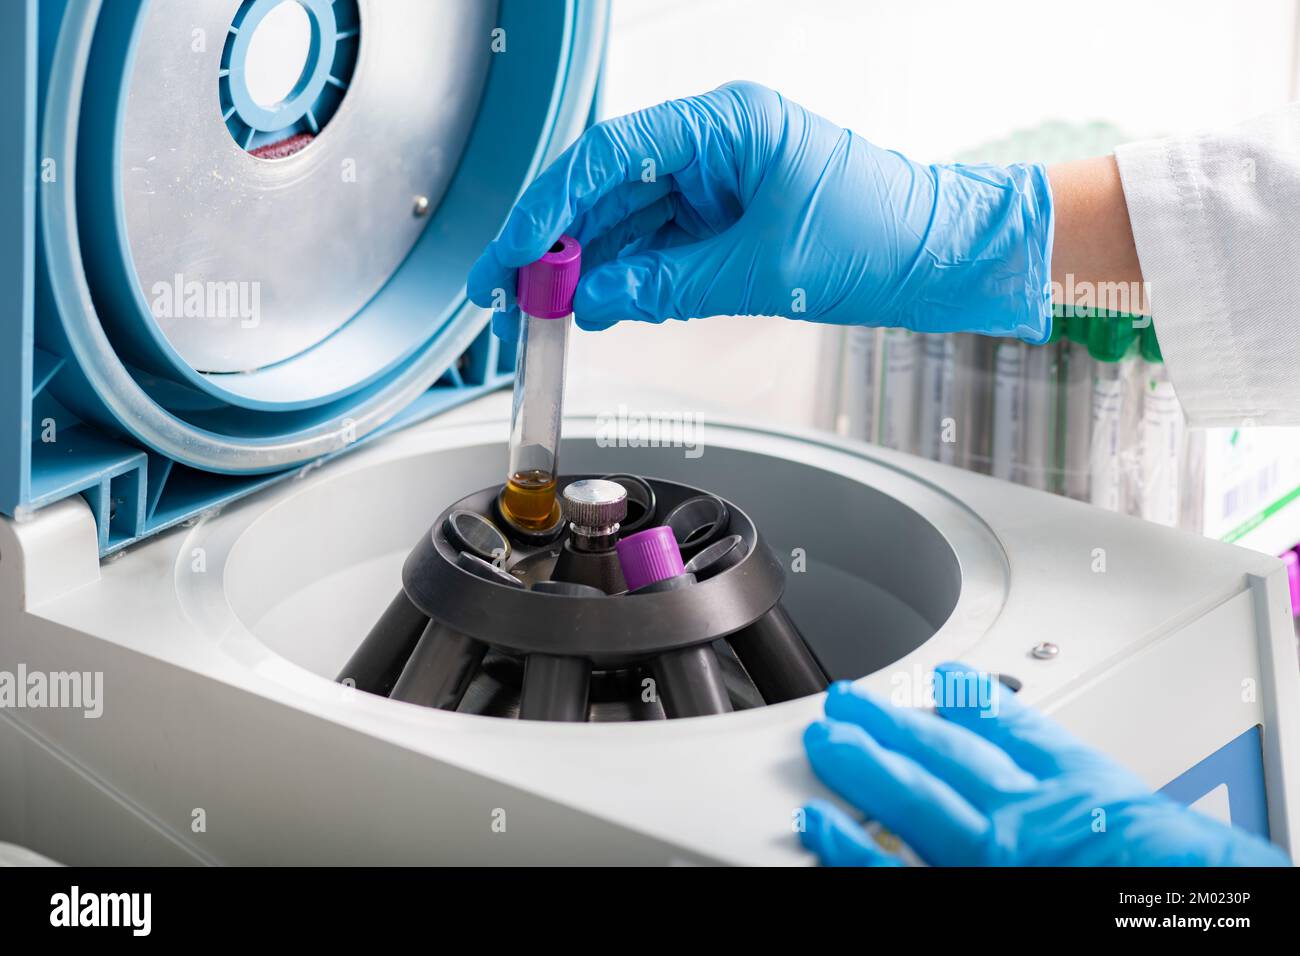 Laboratory centrifuge. Stock Photo